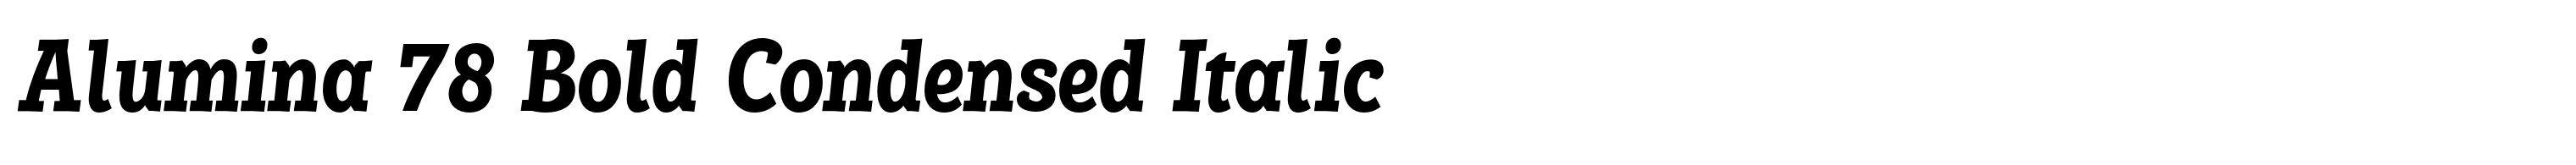 Alumina 78 Bold Condensed Italic